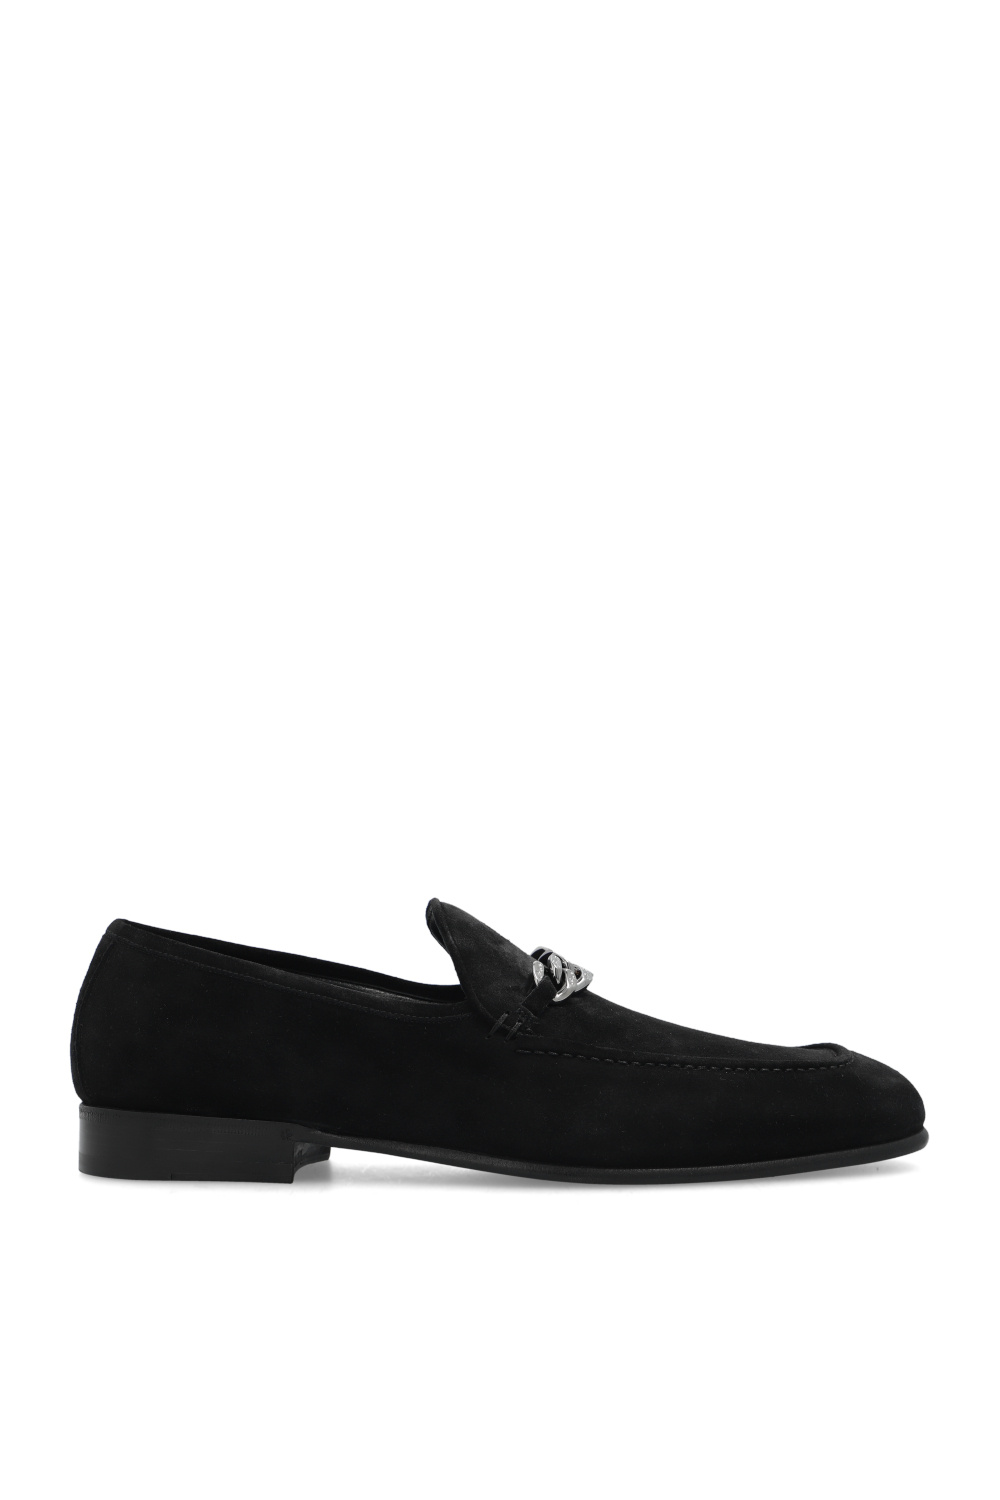 Black ‘Marti’ loafers Jimmy Choo - Vitkac GB